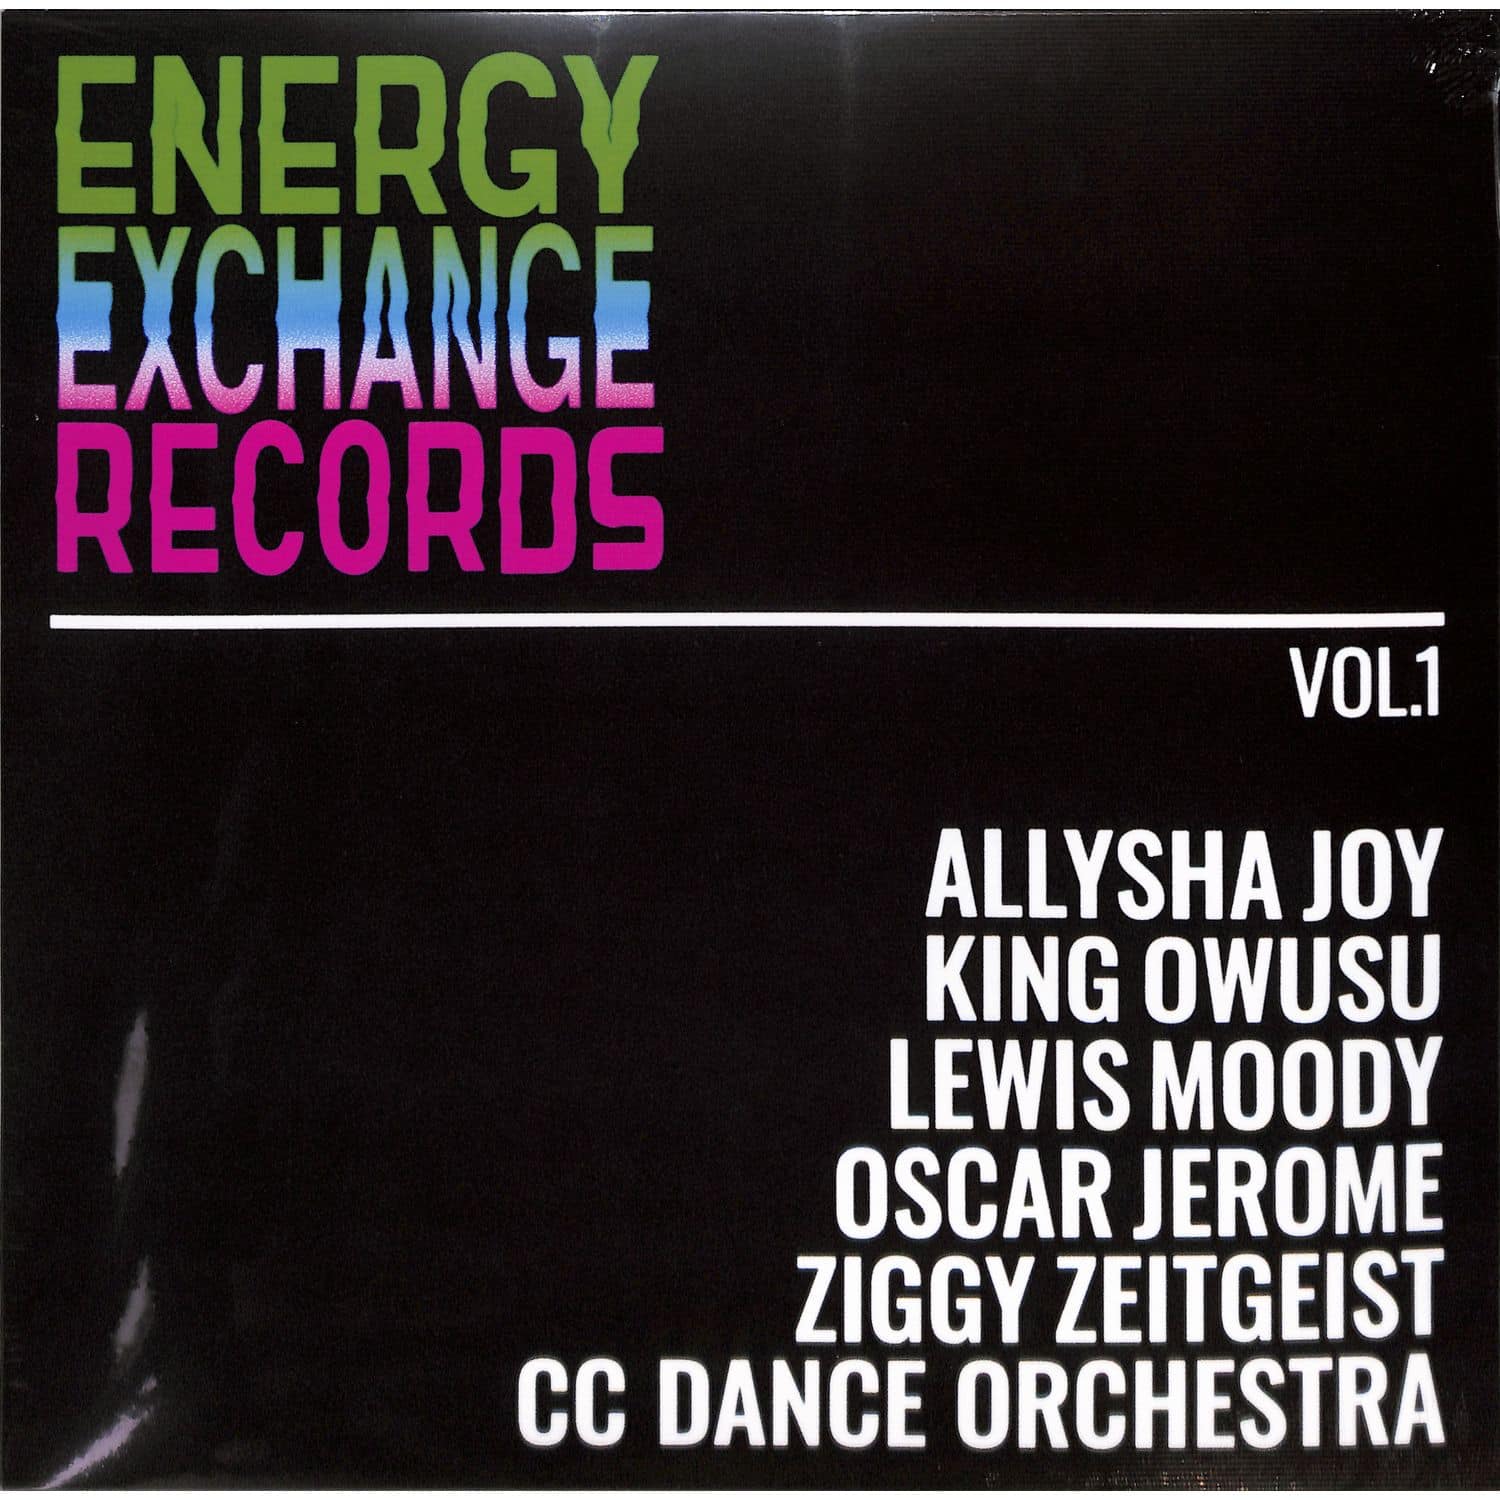 Energy Exchange Ensemble - ENERGY EXCHANGE RECORDS VOL. 1